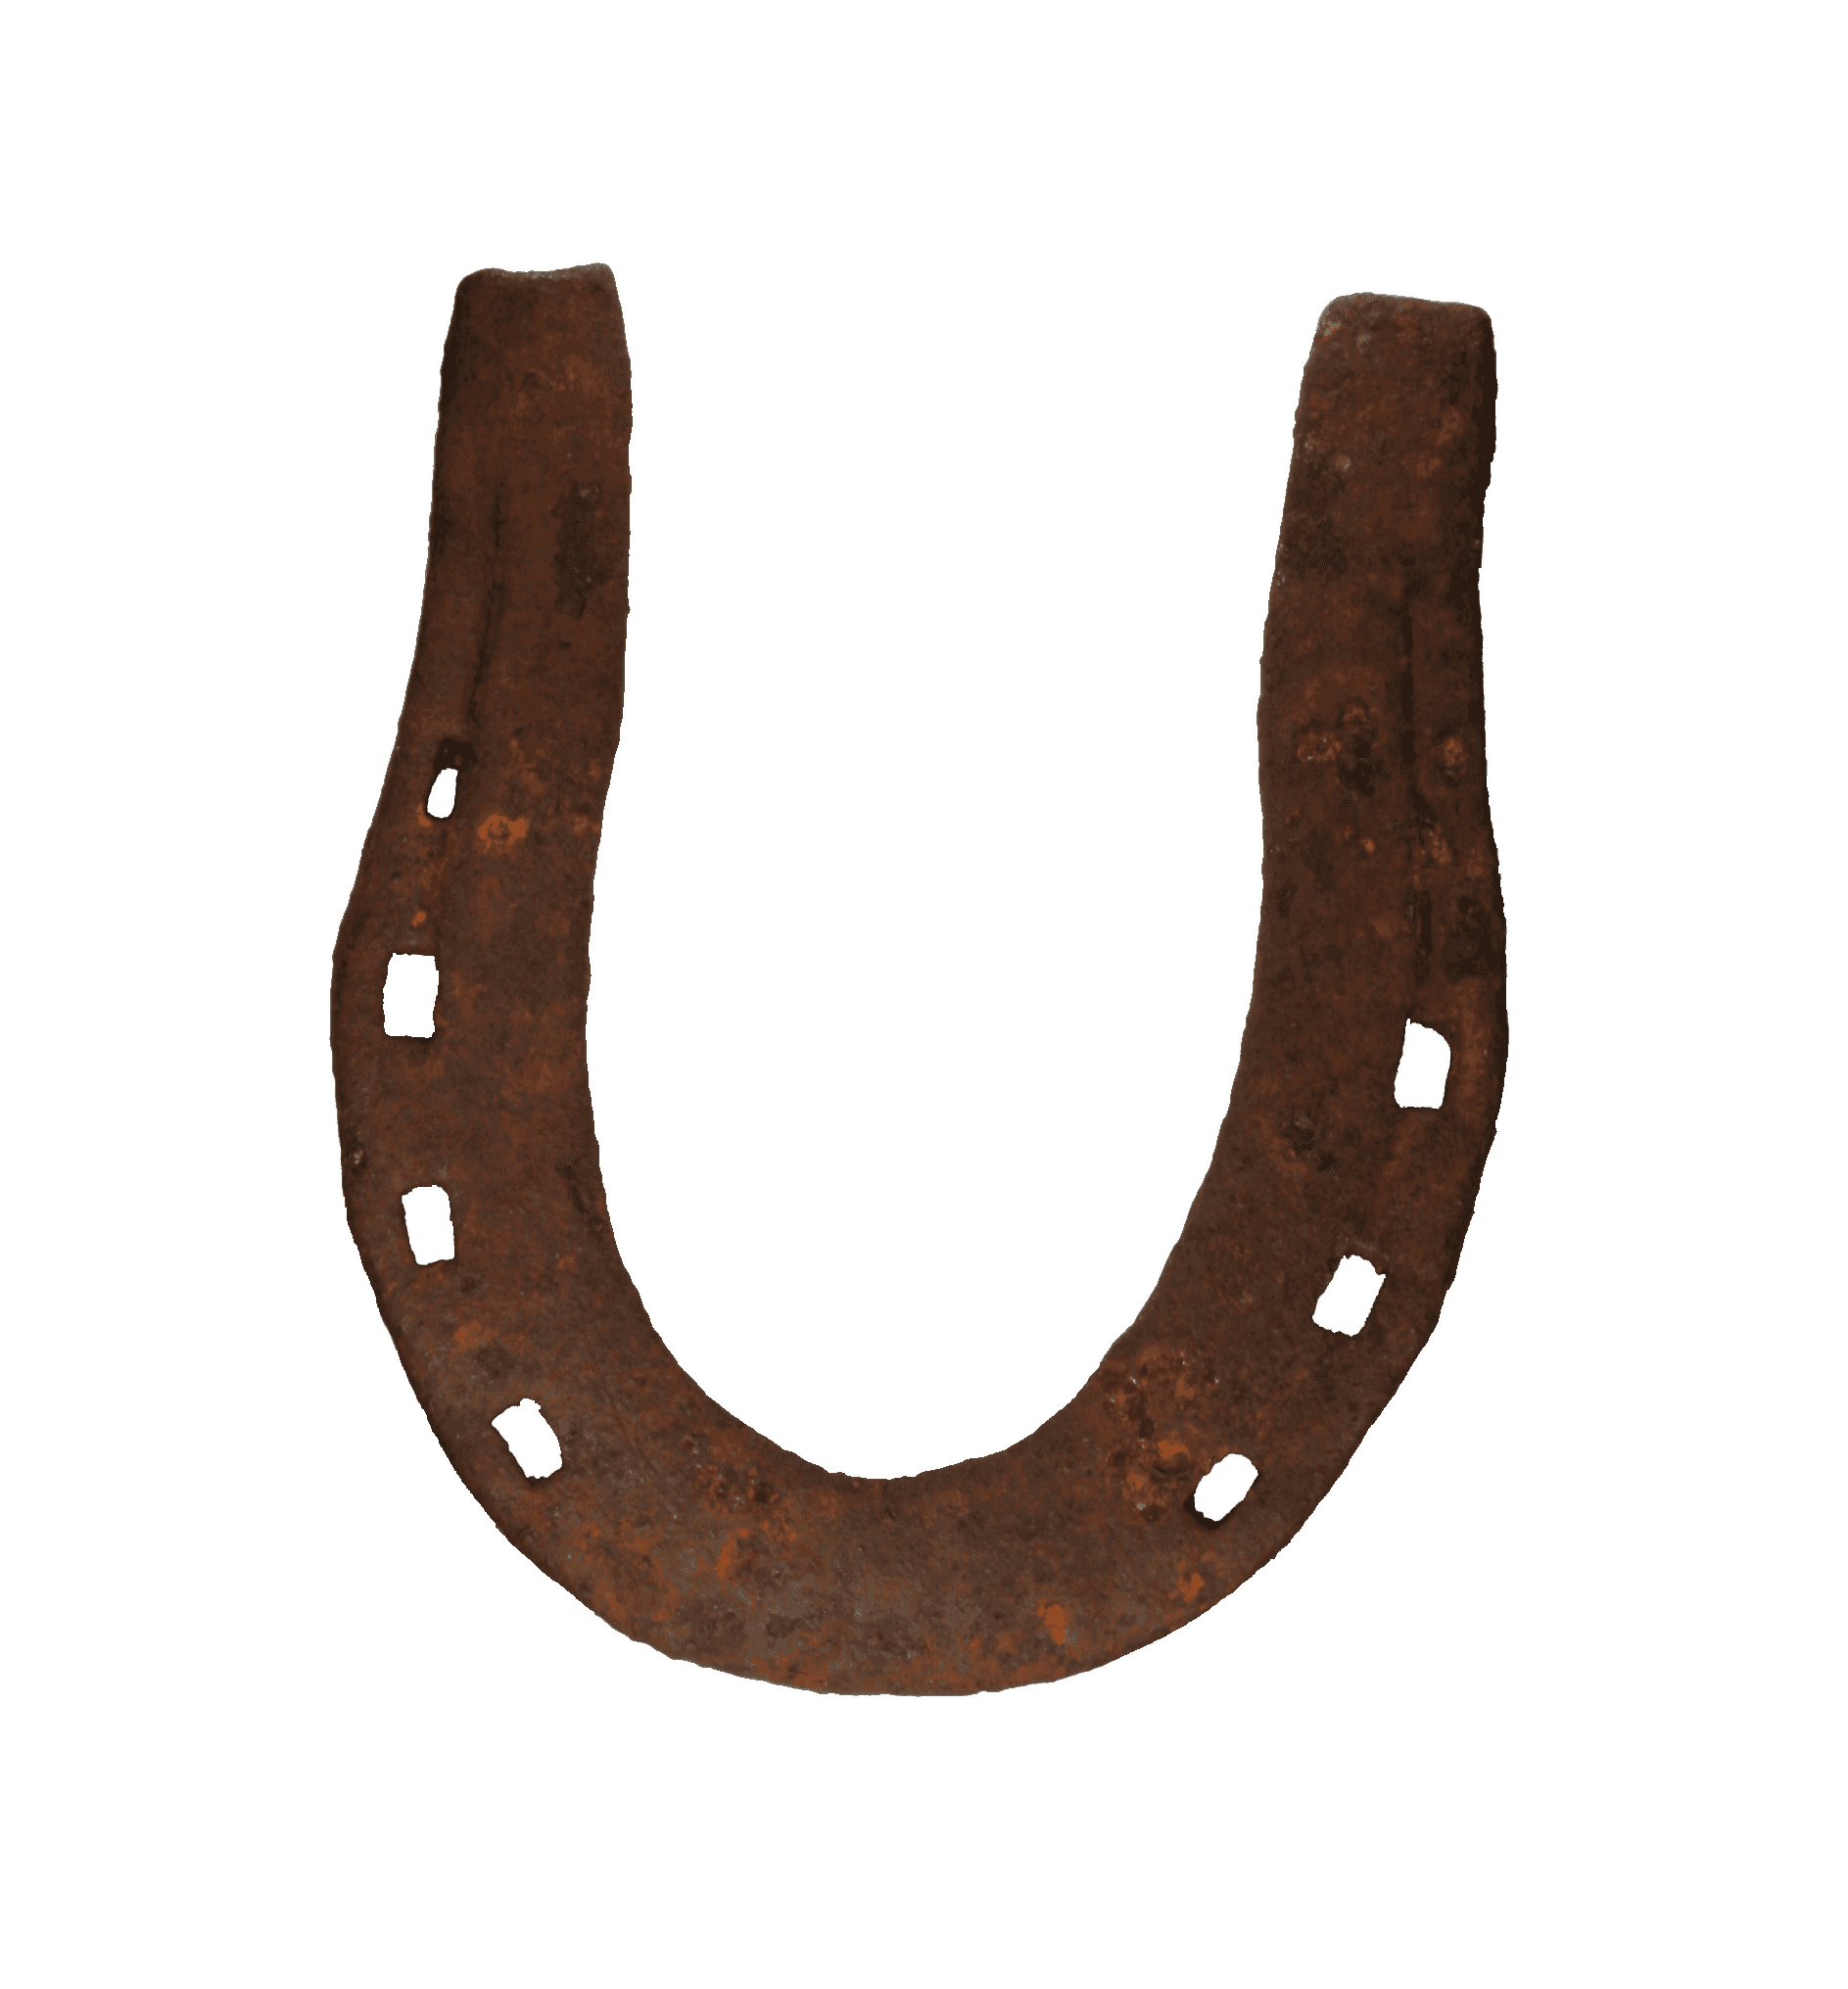 Rusted iron horseshoe.